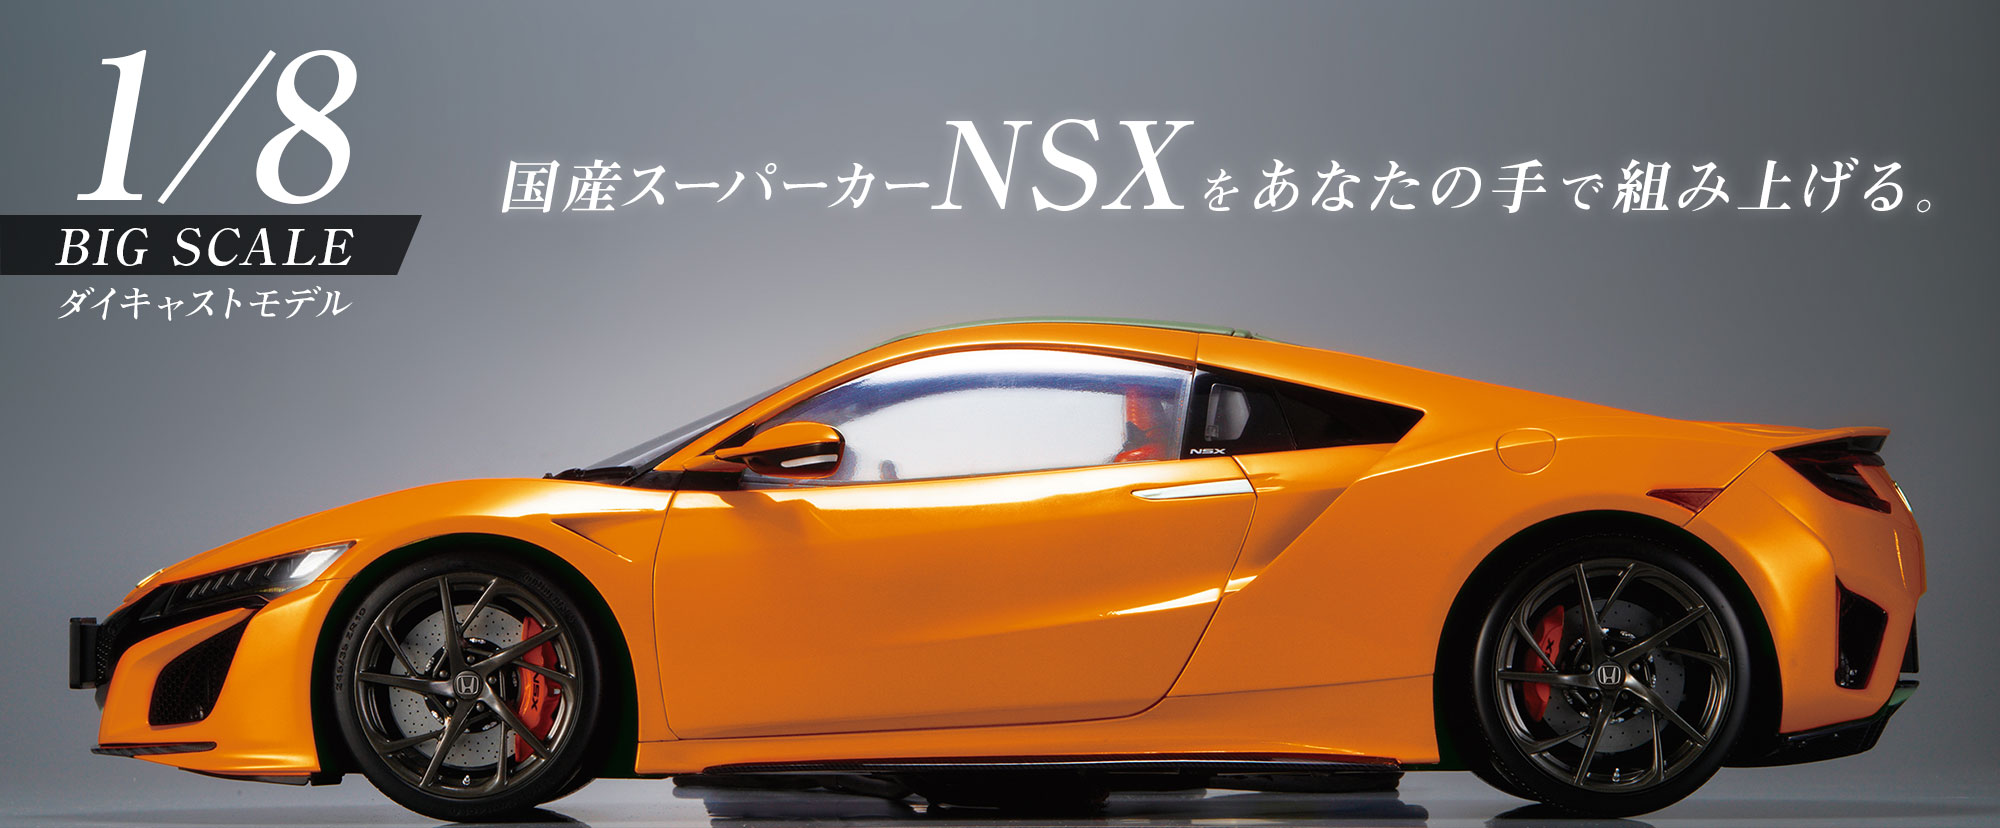 現金特価 デアゴスティーニ 週間 NSX 1号-65号セット ecousarecycling.com